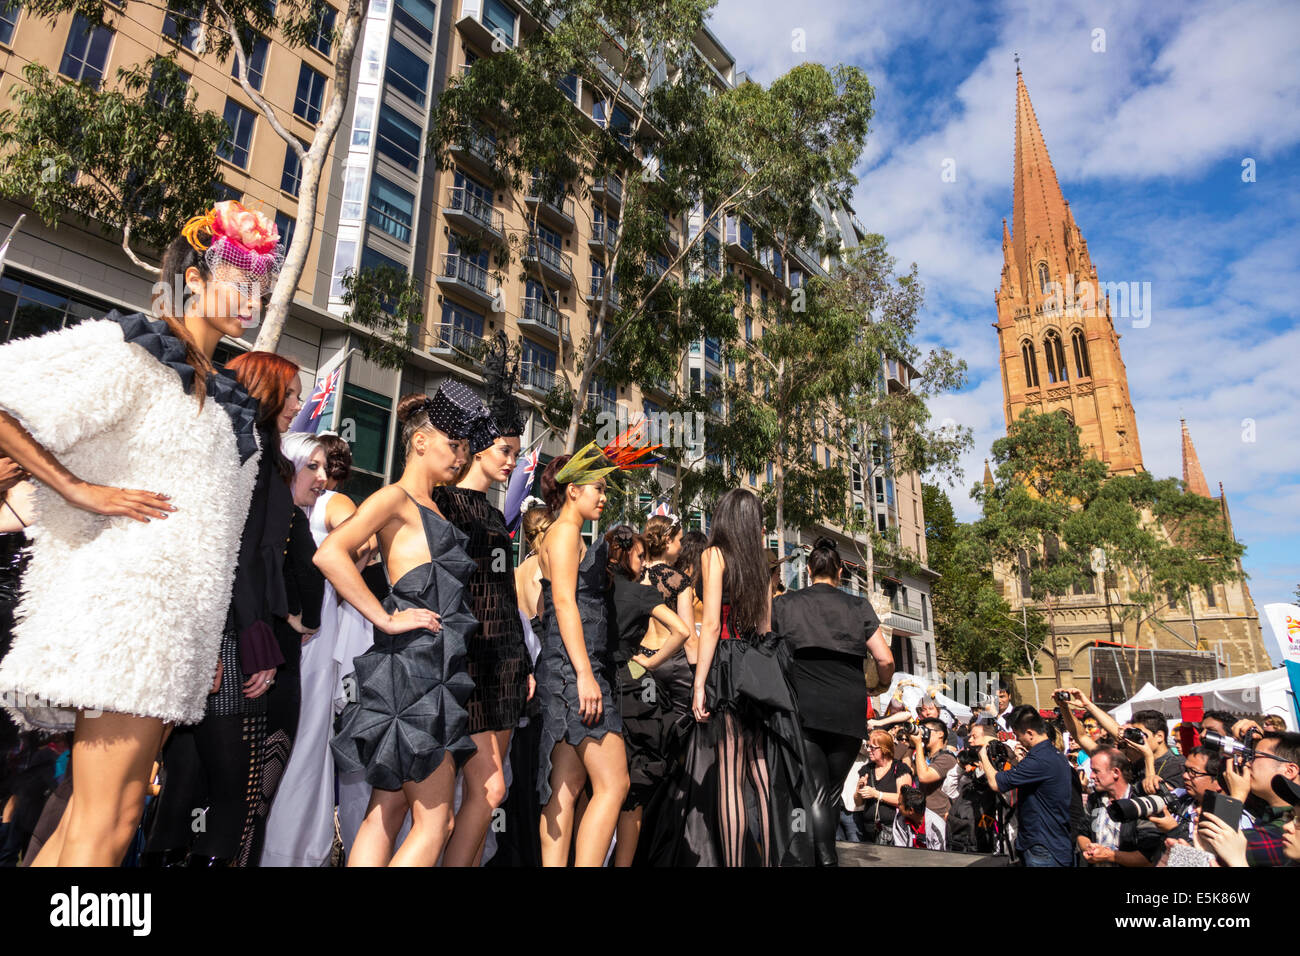 Melbourne Australien, Swanston Street, City Square, Festival, Lord Mayor's Student Welcome, Modenschau, Start- und Landebahn, Frau weibliche Frauen, Modell, Posen, auffällige POS Stockfoto